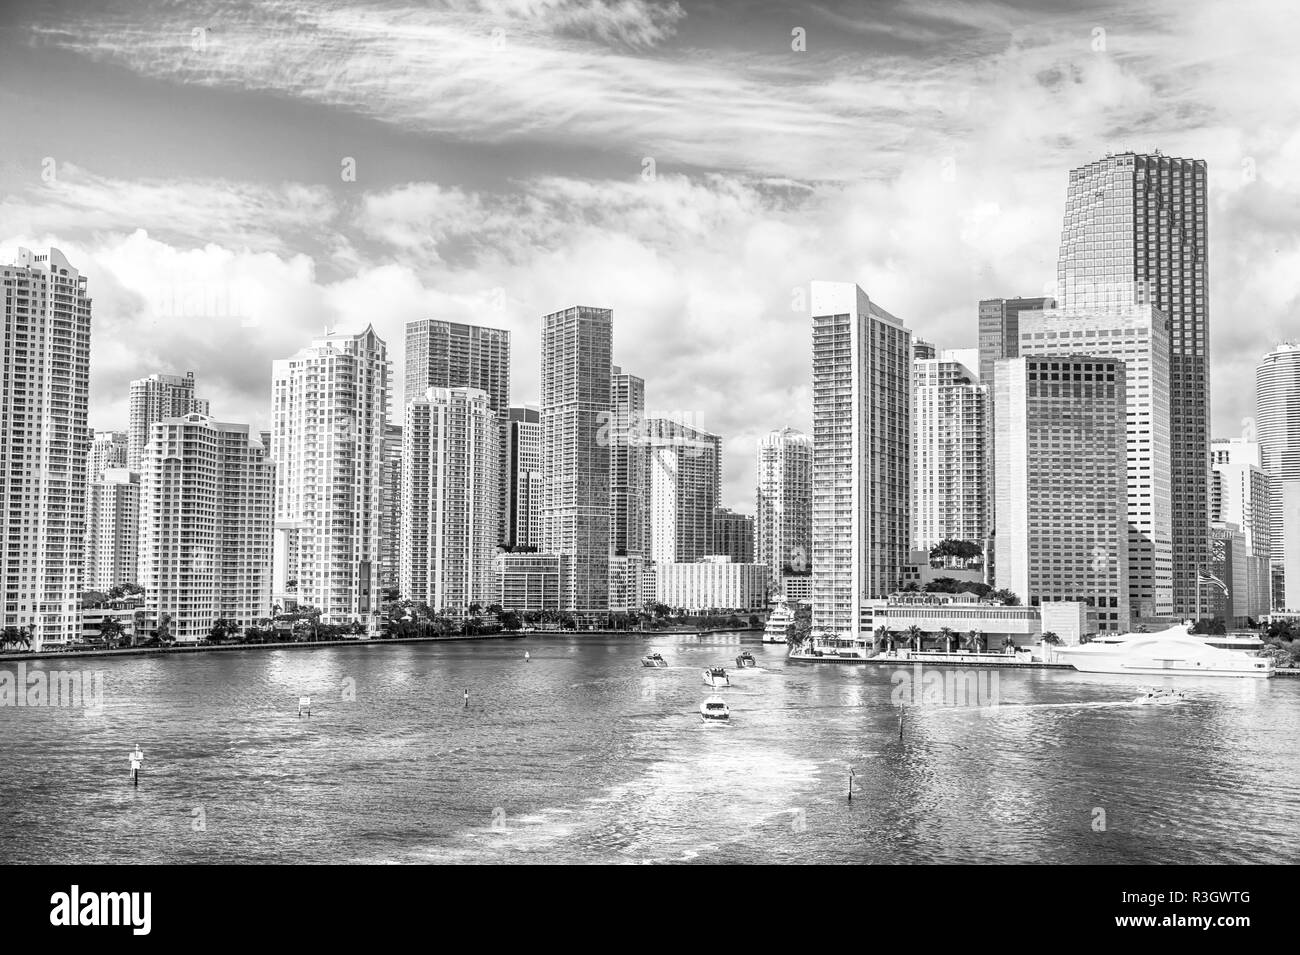 La vie de Miami. Vue aérienne de gratte-ciel de Miami avec ciel nuageux bleu, blanc de la voile à côté de Miami Downtown Miami. propriété de luxe, des immeubles modernes Banque D'Images